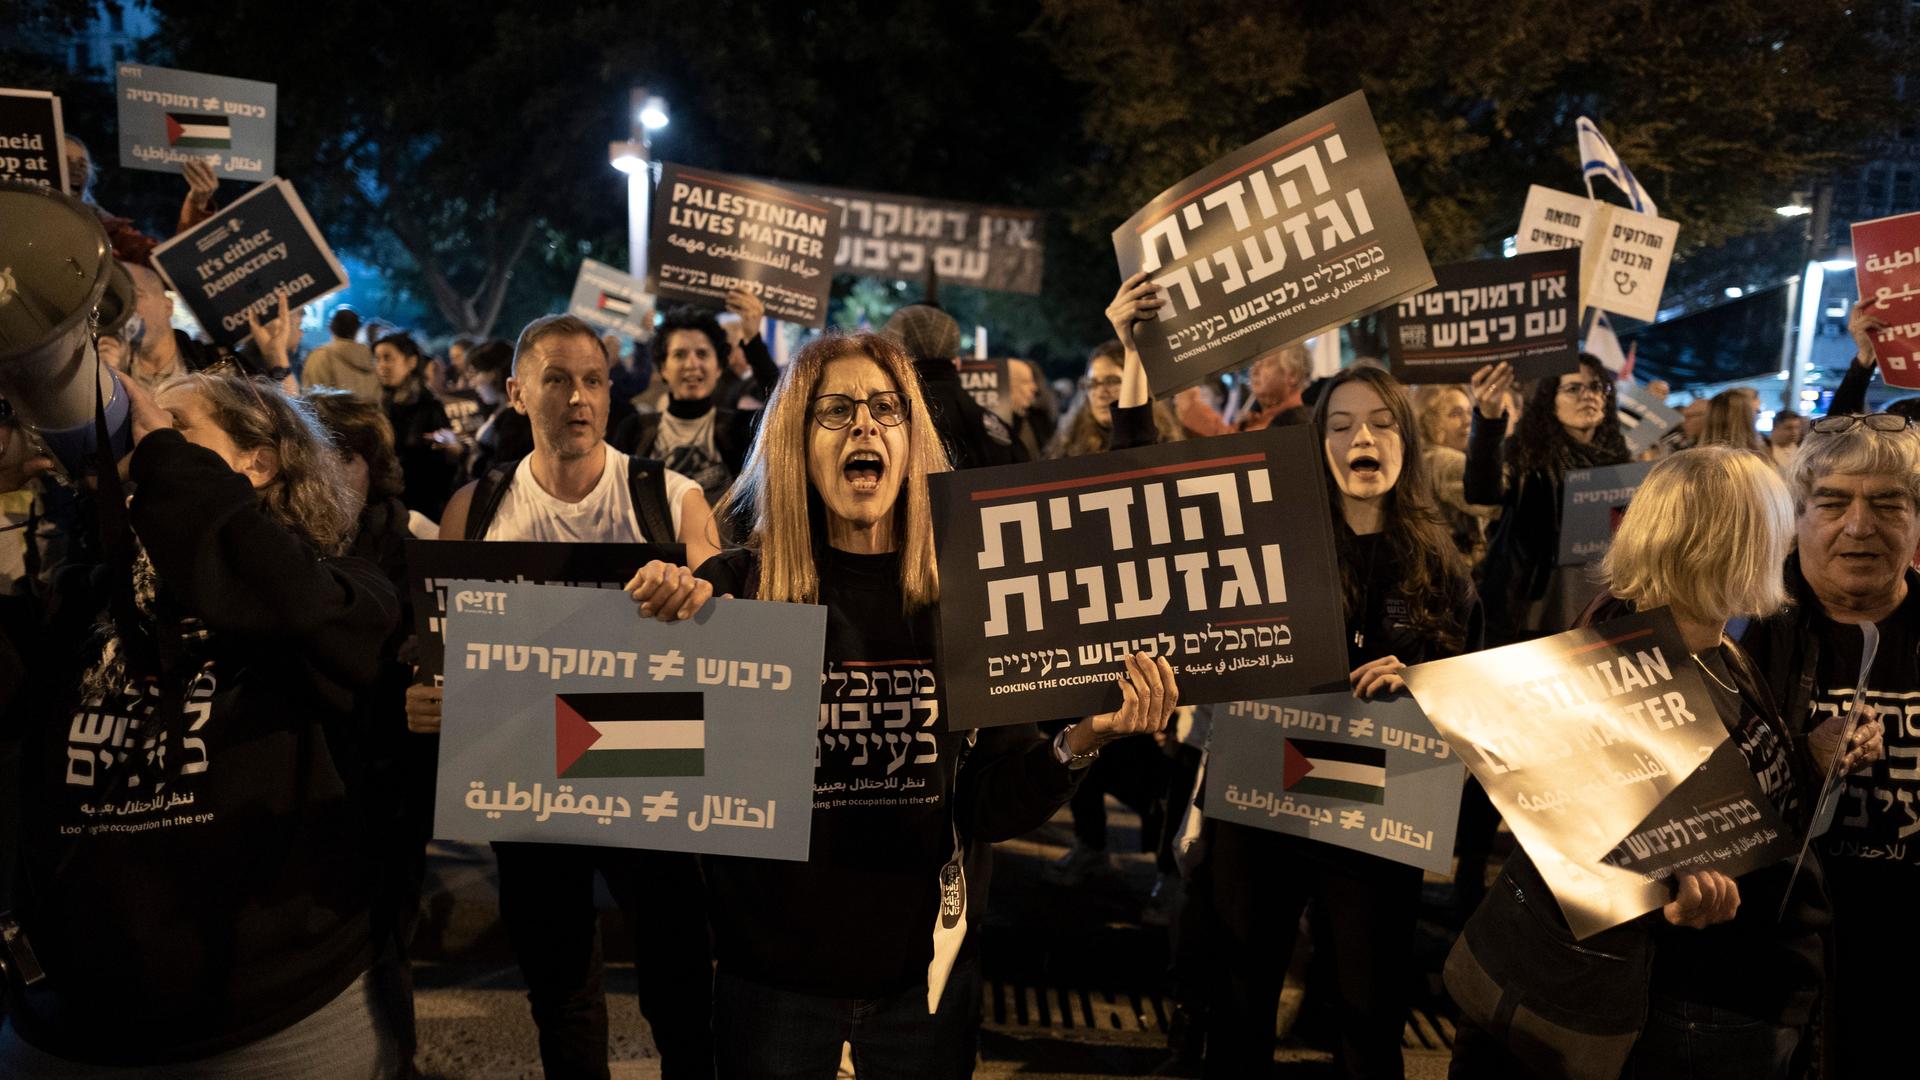 Menschen demonstrieren mit Plakaten während einer Demonstration gegen die neue Regierung. Auf einem steht Palestinian Lives Matter.